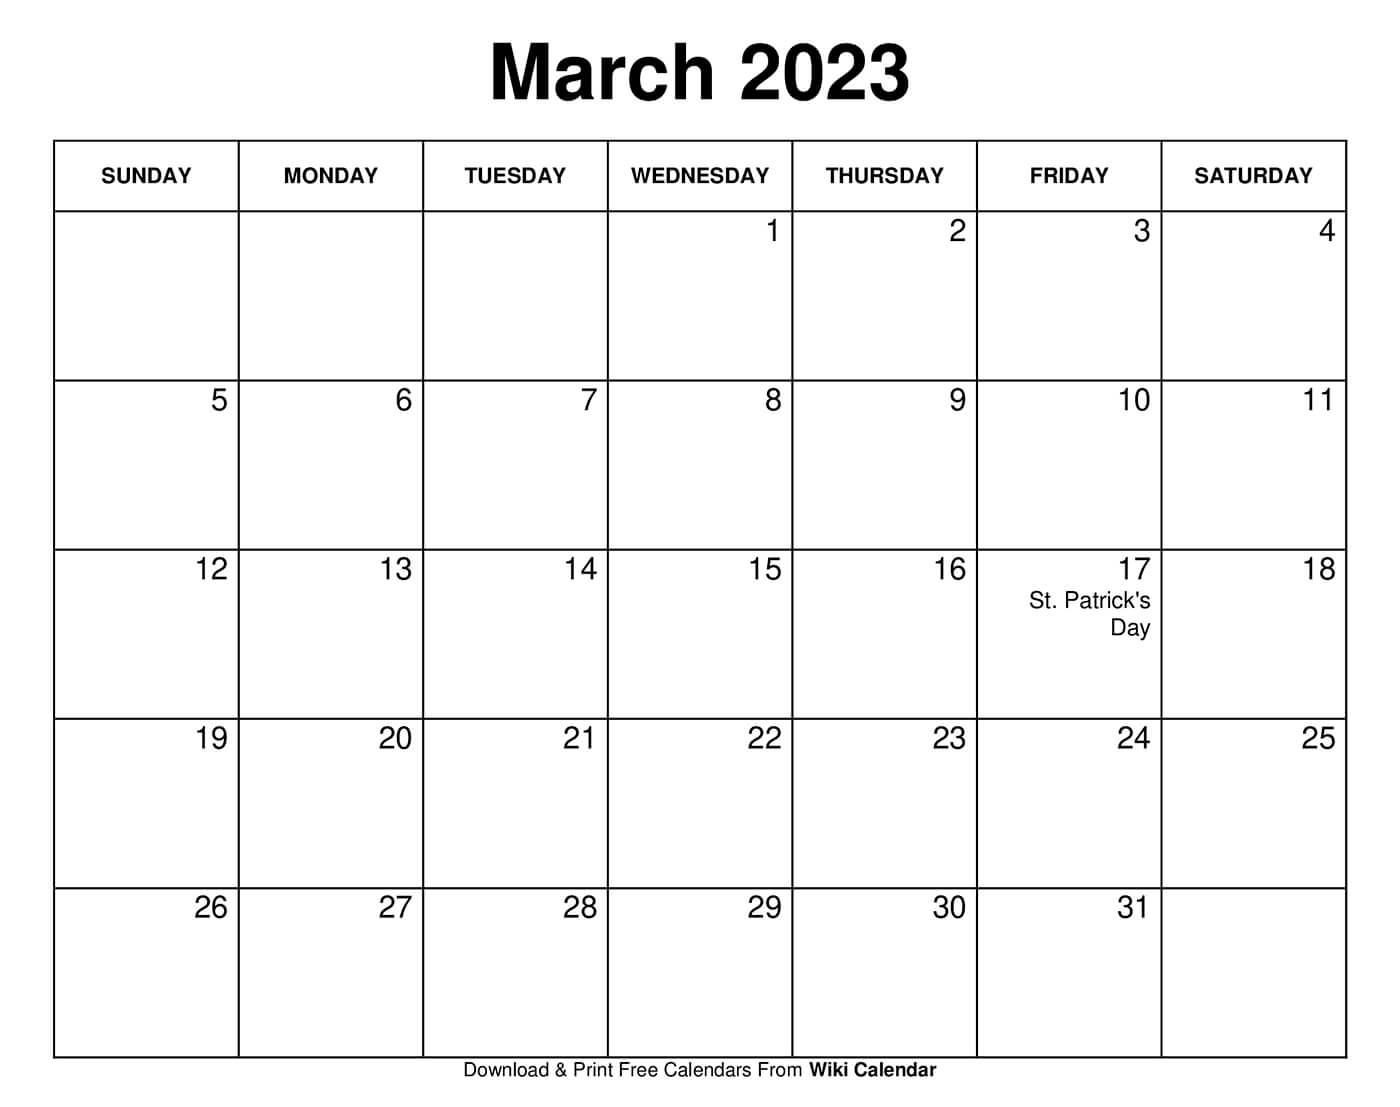 January wiki calendar 2023